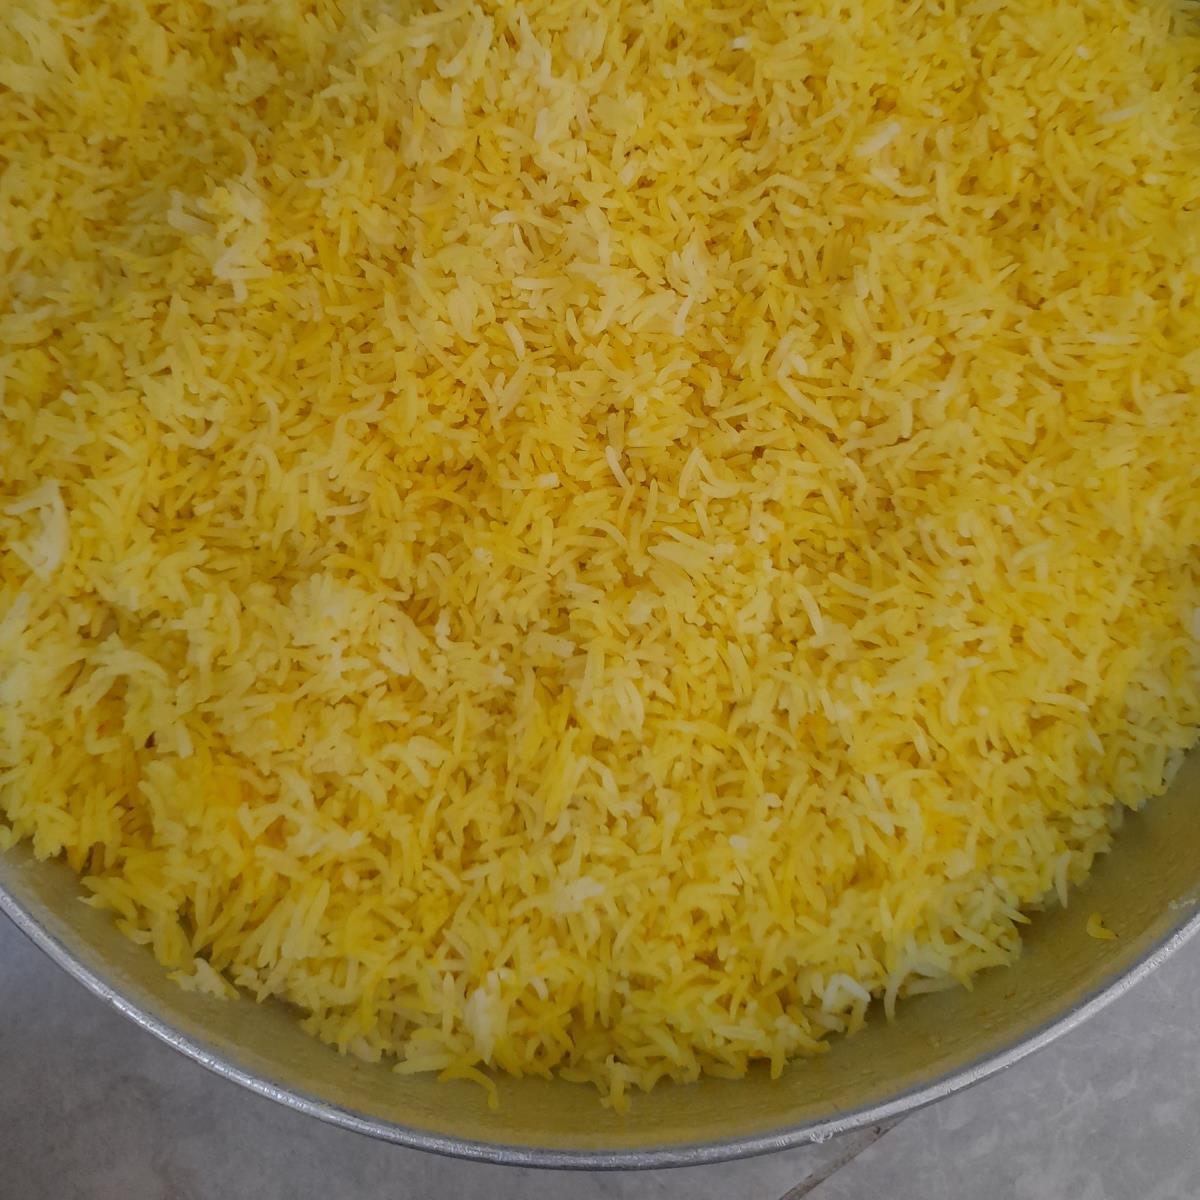 אורז בסמטי צהוב.